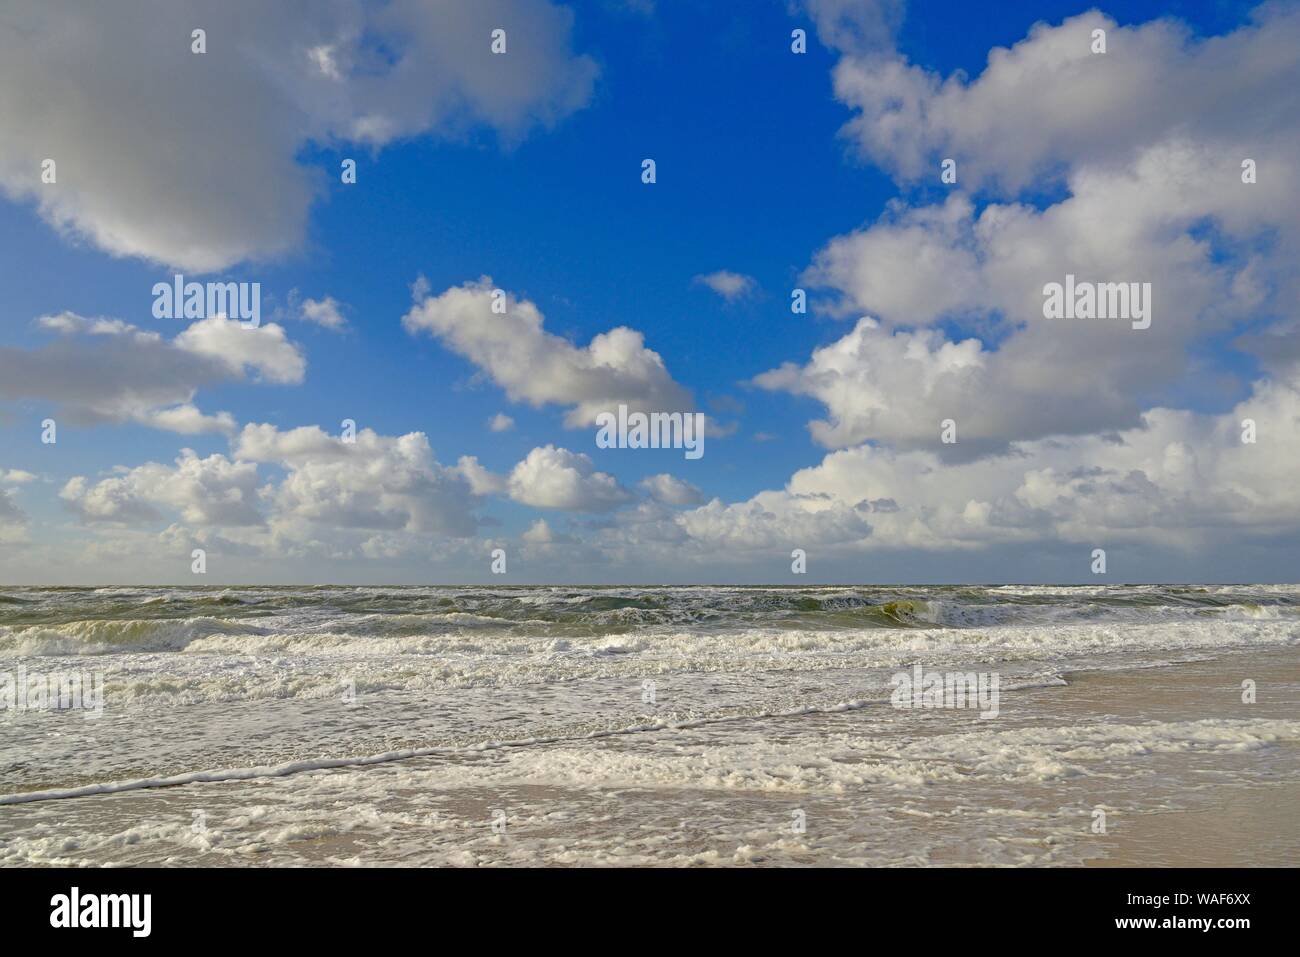 Wellen läuft aus am sandigen Strand, blauer Himmel mit Tiefziehen Haufenwolken (Cumulus) über der Nordsee, Kampen, Sylt, Nordfriesische Inseln Stockfoto